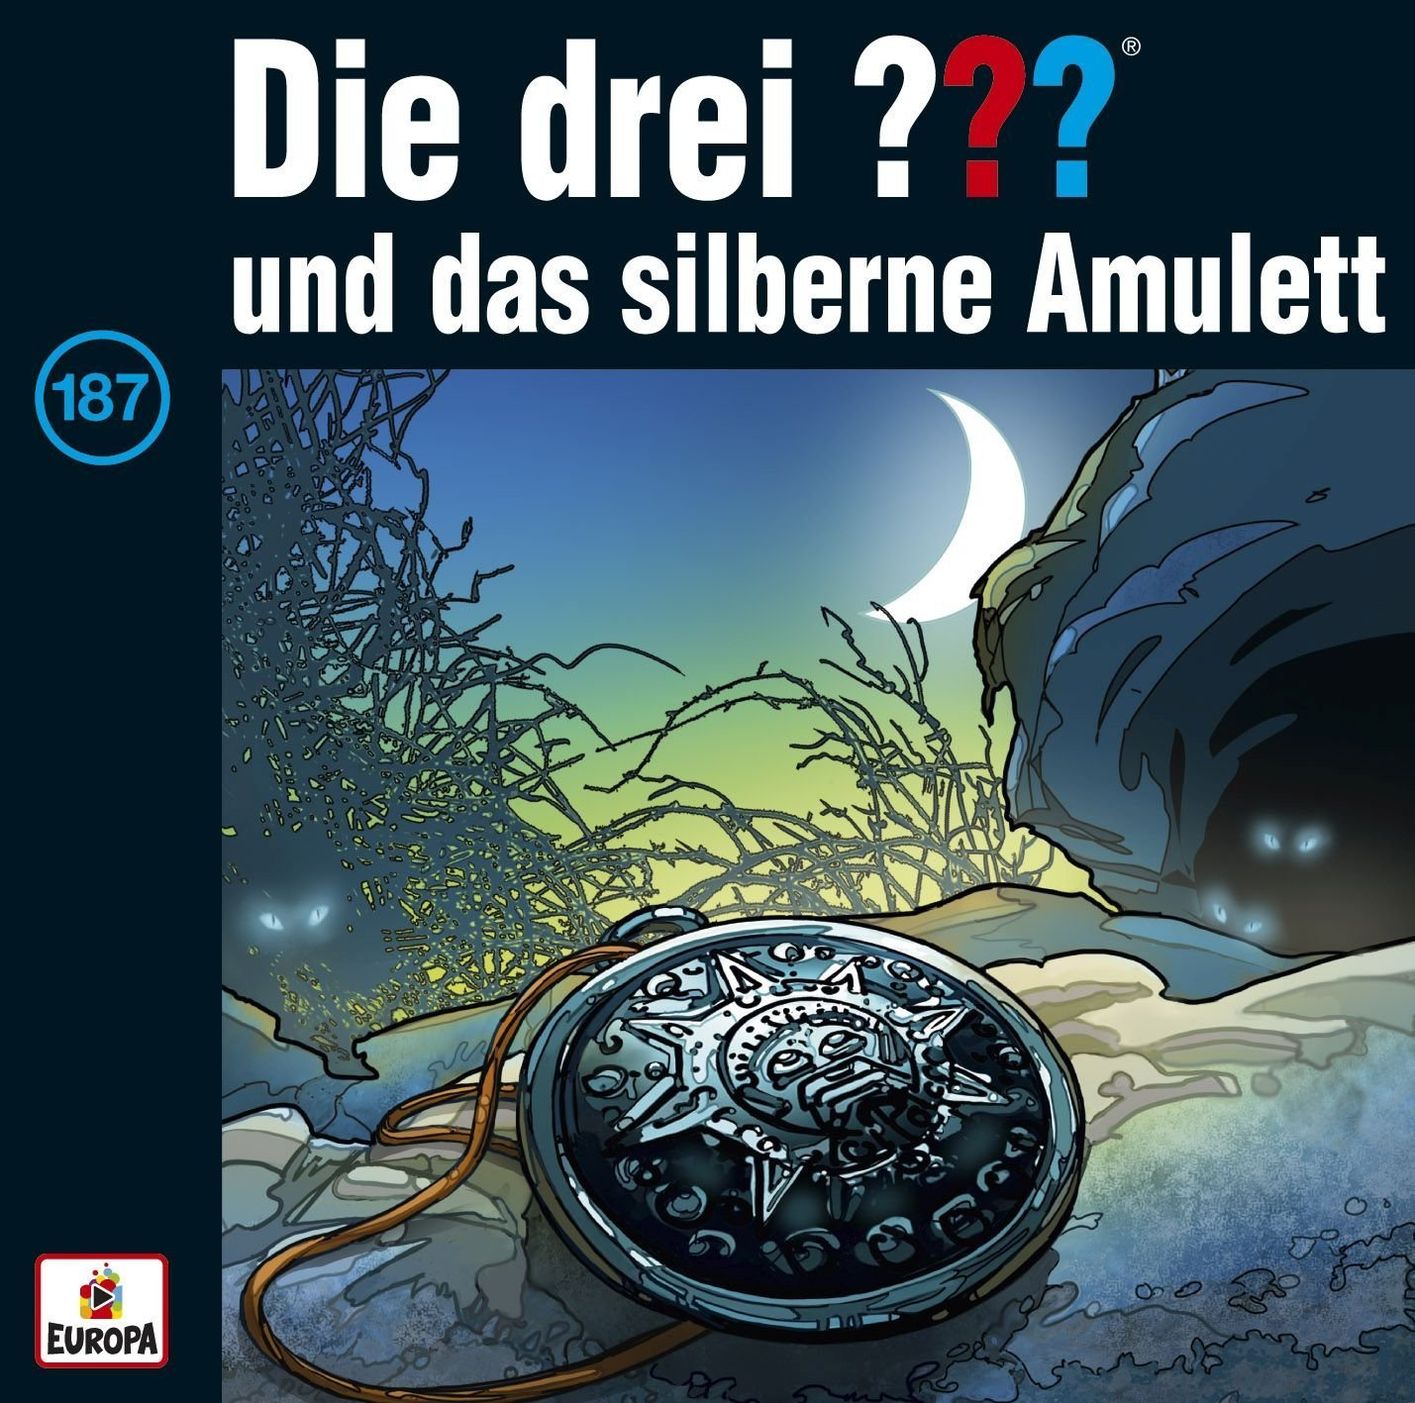 Die drei Fragezeichen - Hörbuch - 187 - Das silberne Amulett Hörbuch jetzt  bei Weltbild.ch bestellen